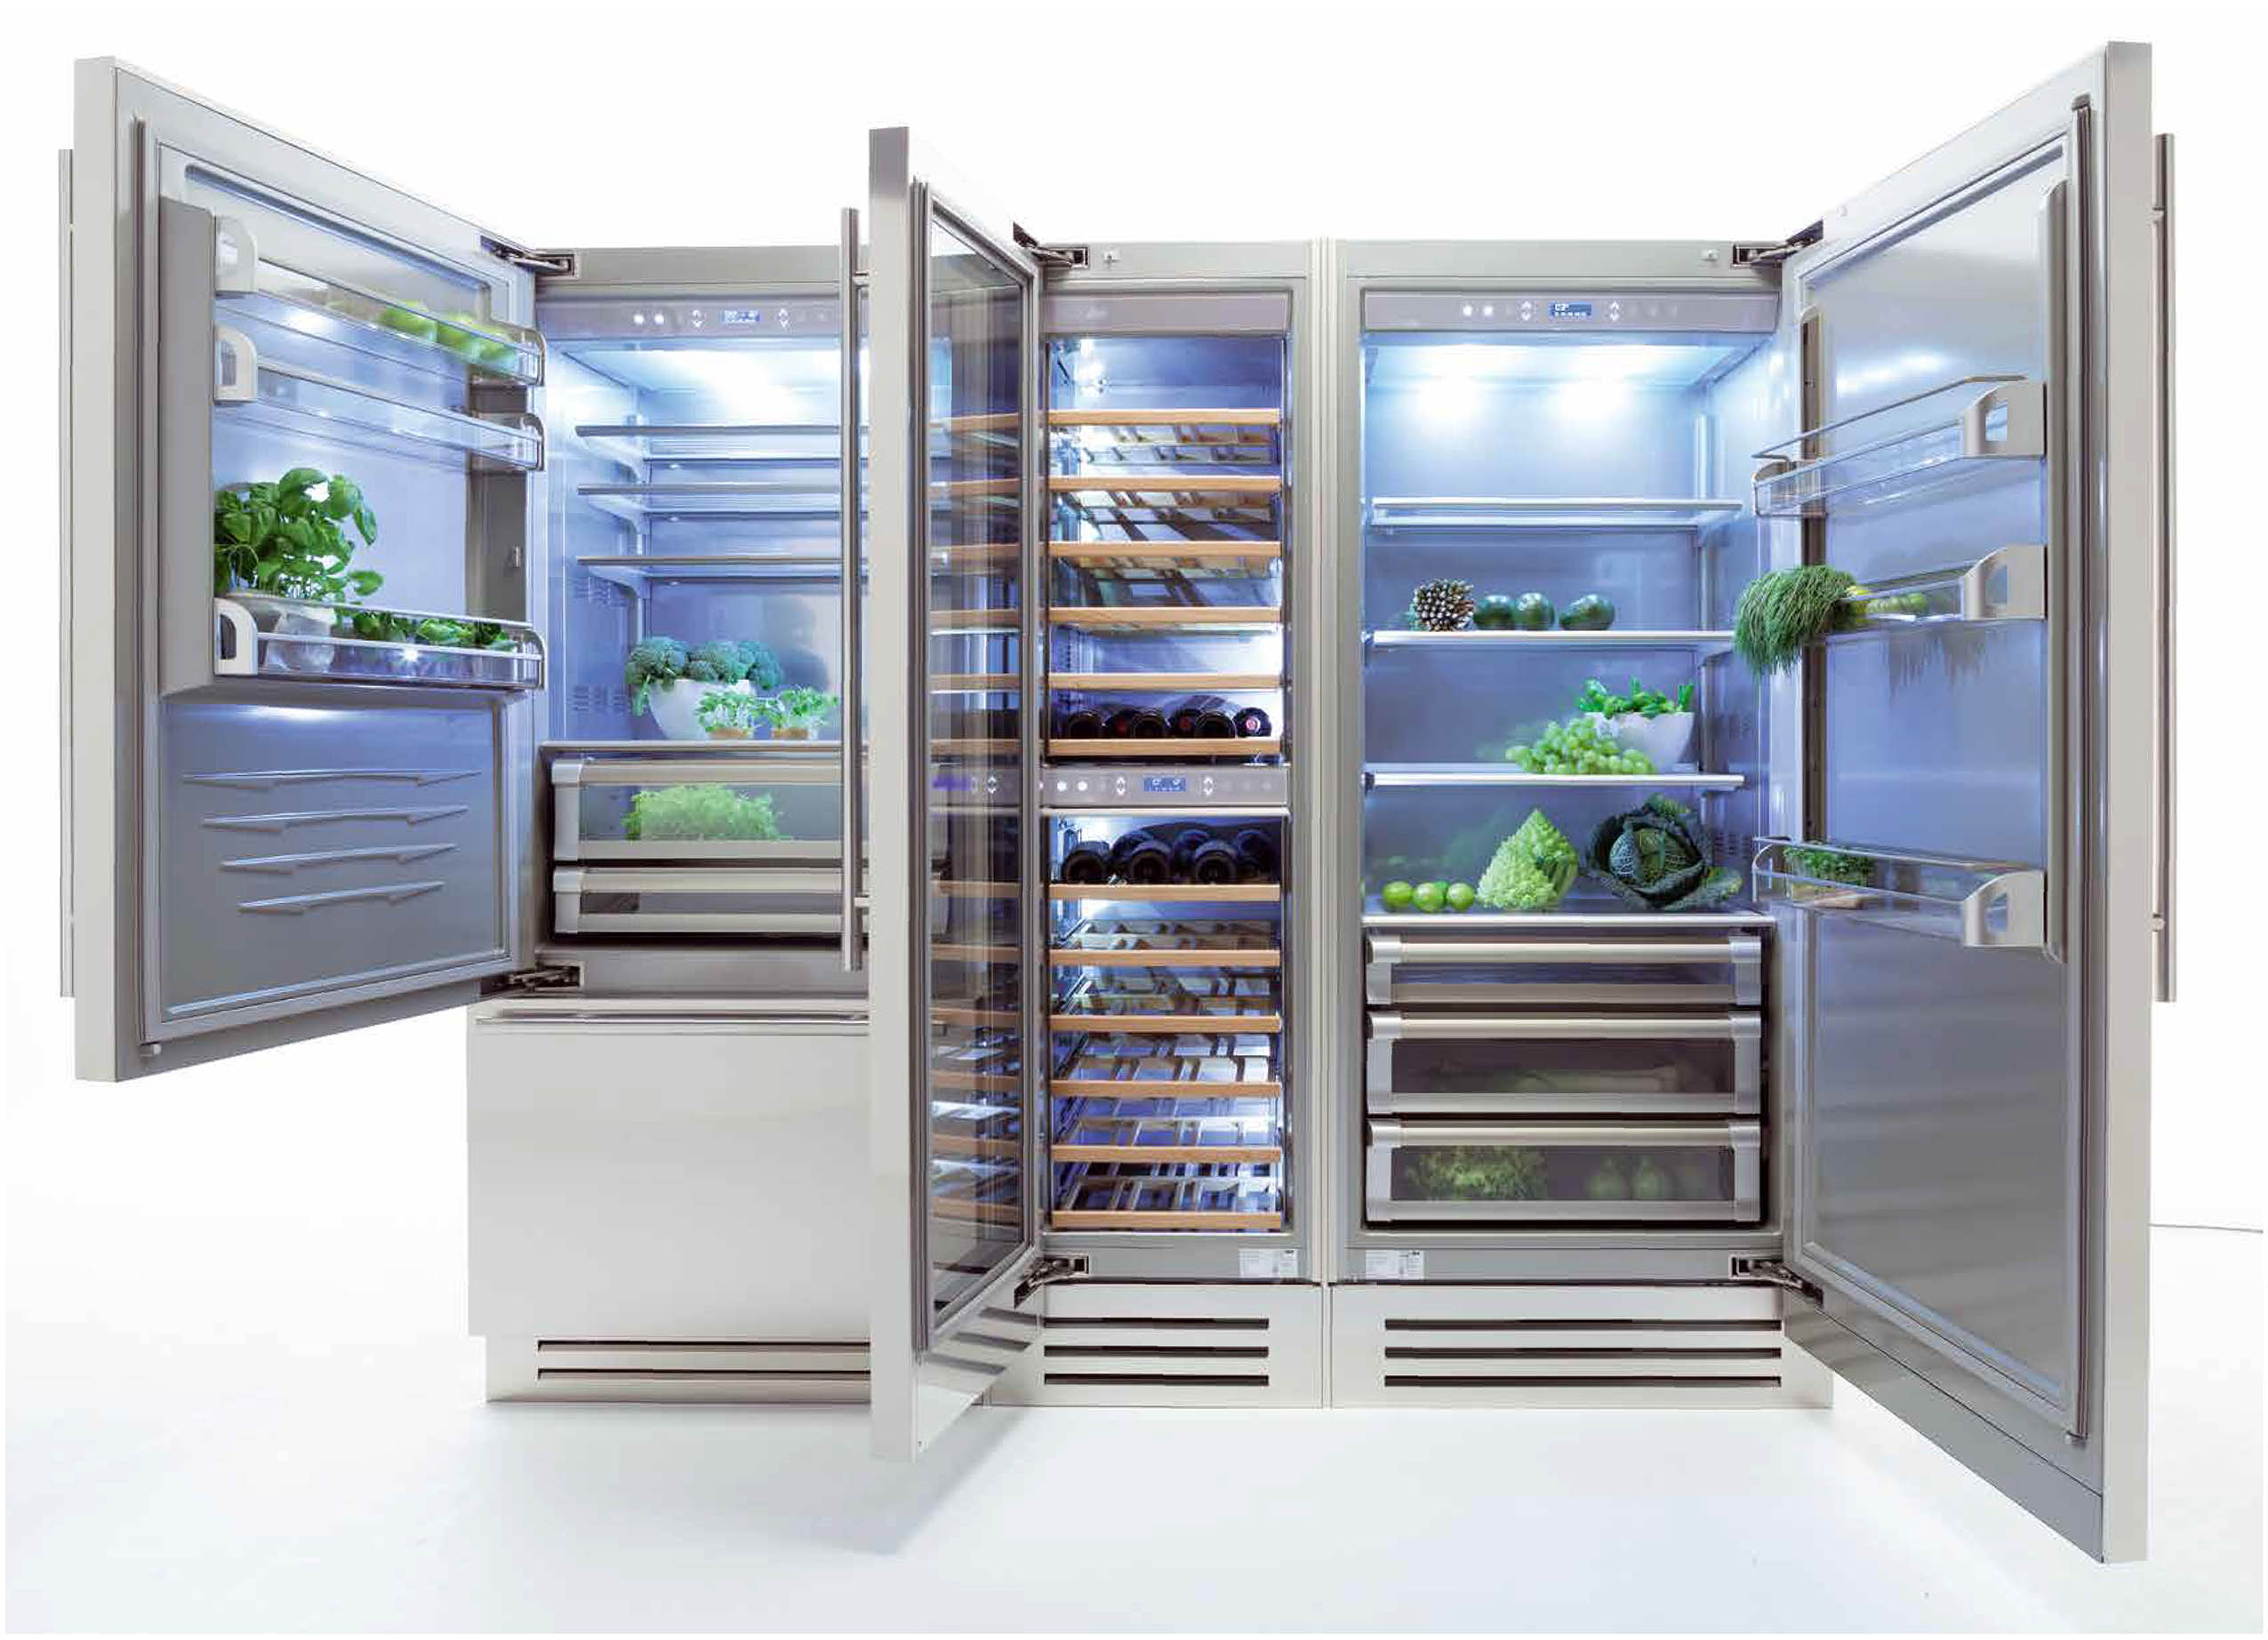 Холодильники no frost купить в москве. Холодильник Fhiaba s8990fr6. Встраиваемый холодильник Fhiaba m8991tgt6. Fhiaba ks8990fr6. Холодильник Fhiaba x15990otw6.